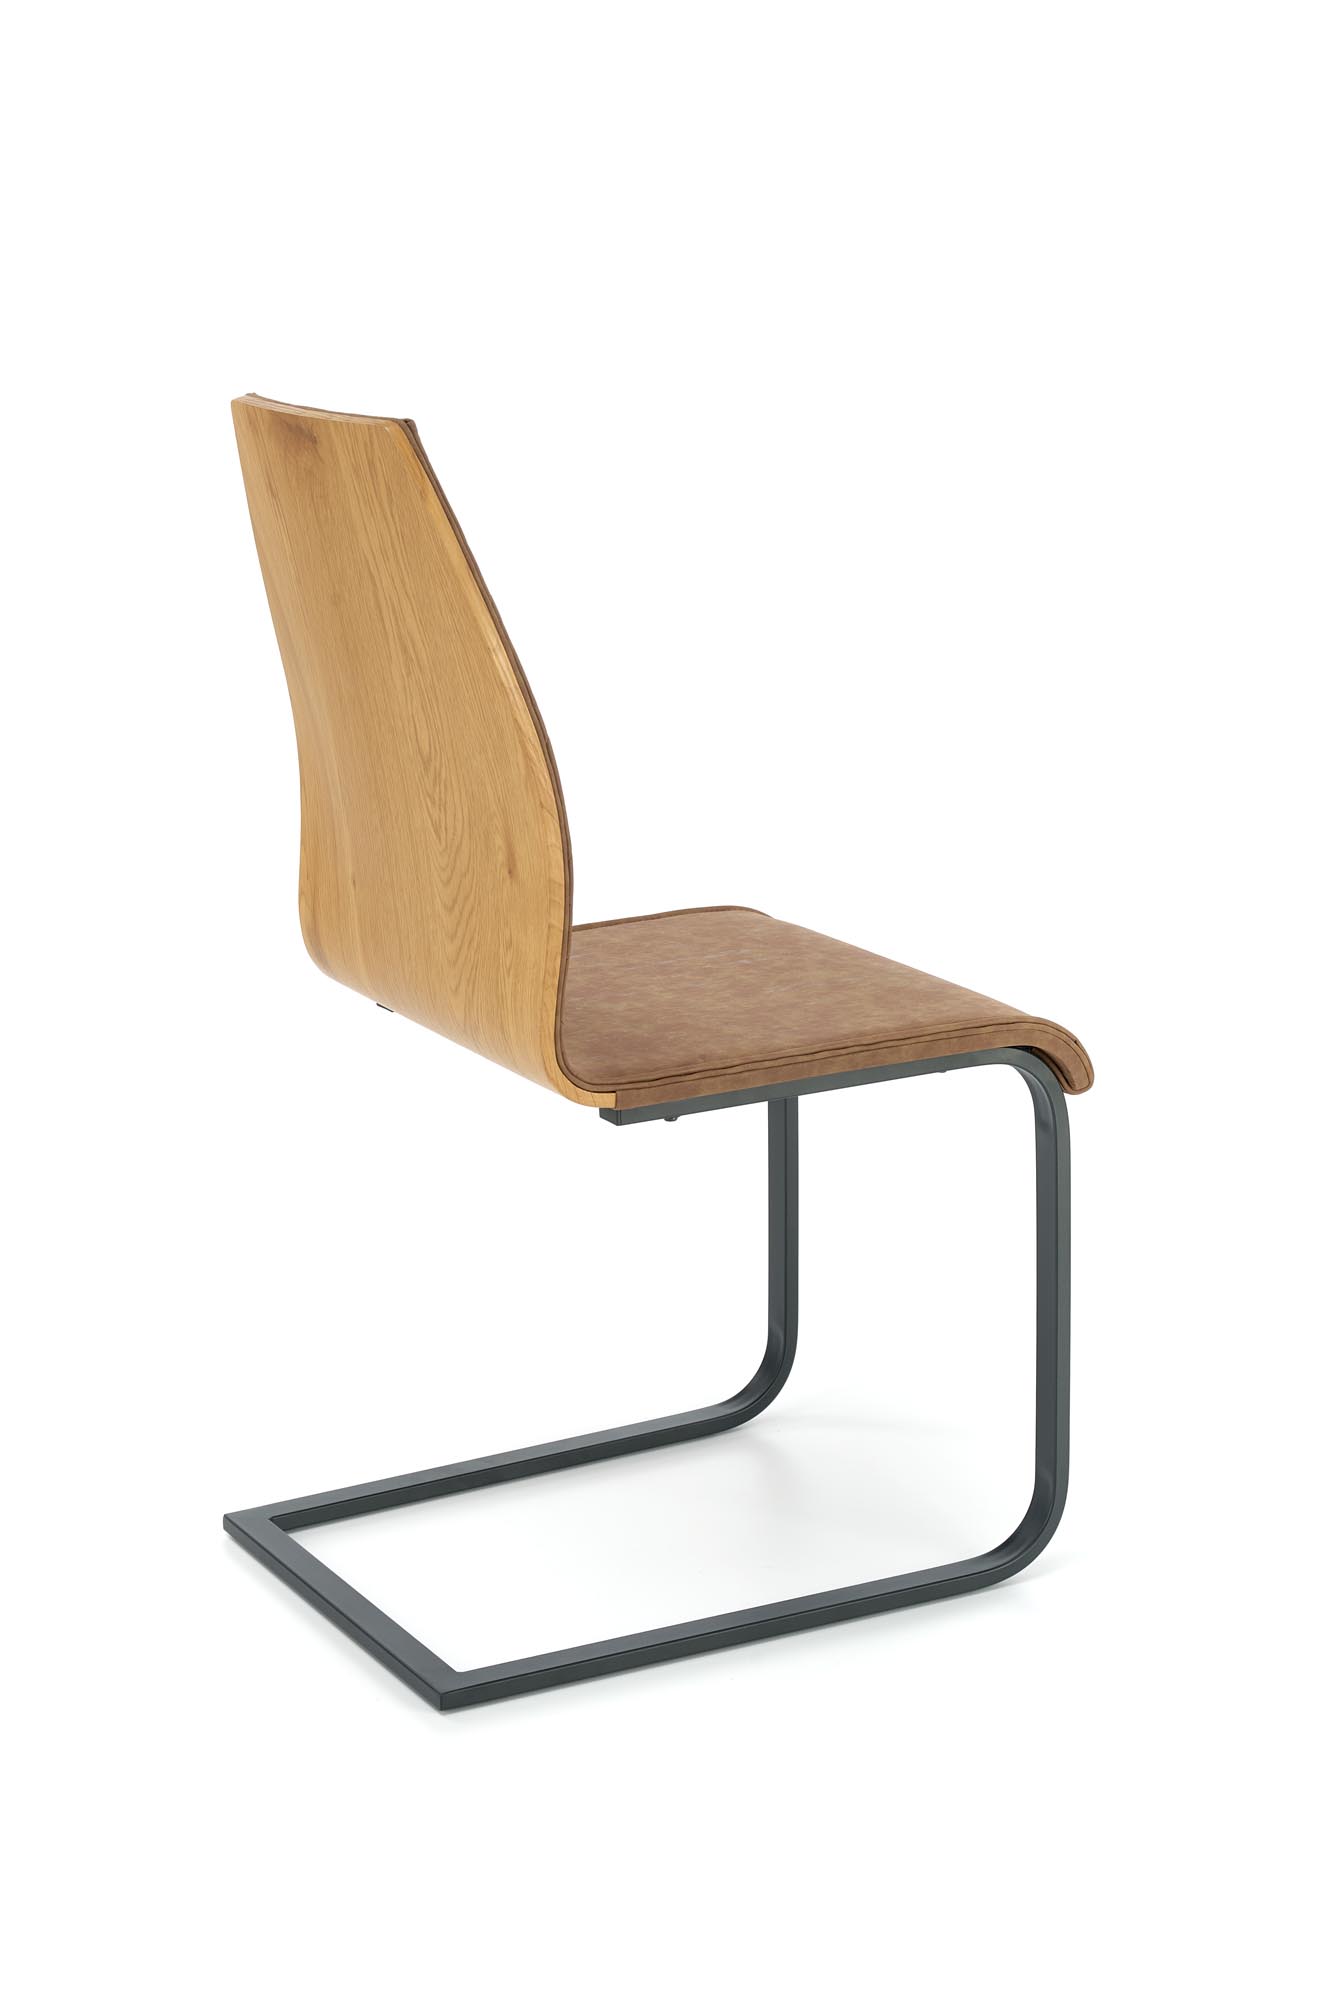 Židle čalouněná K265 - Černý / Hnědý / Dub medový židle čalouněné k265 - Černý / Hnědý / Dub medový